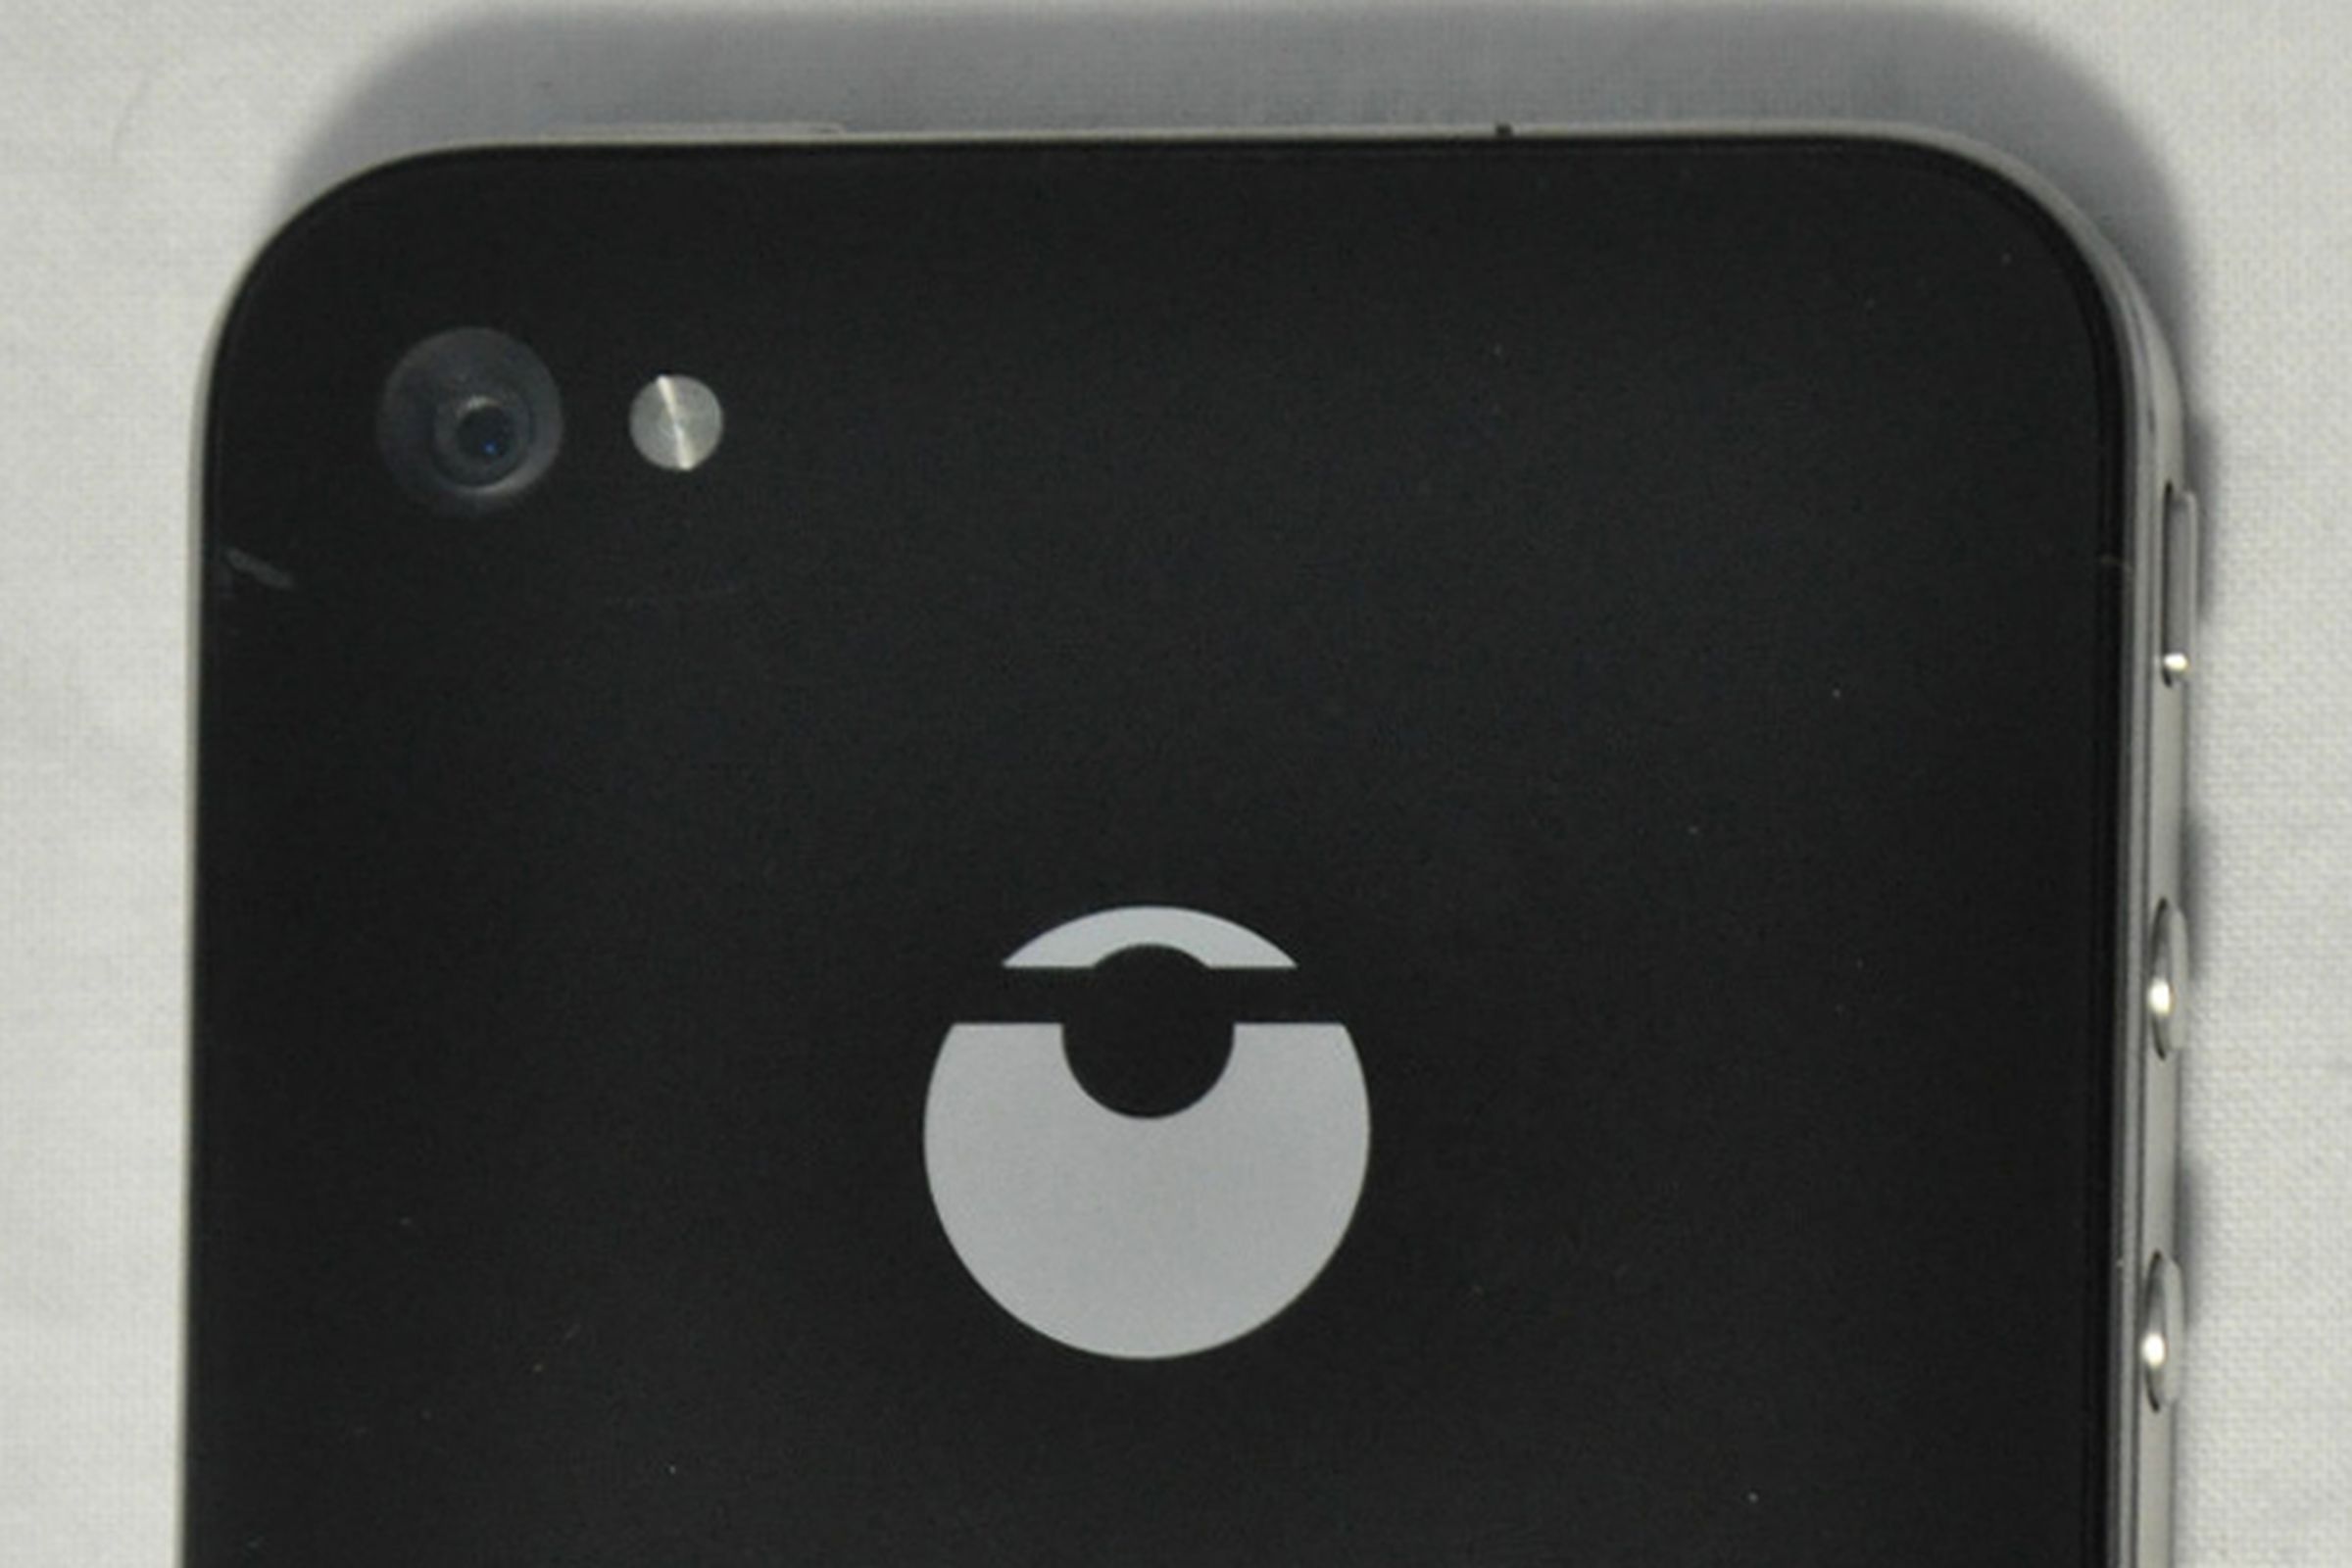 iphone prototype logo (ebay)